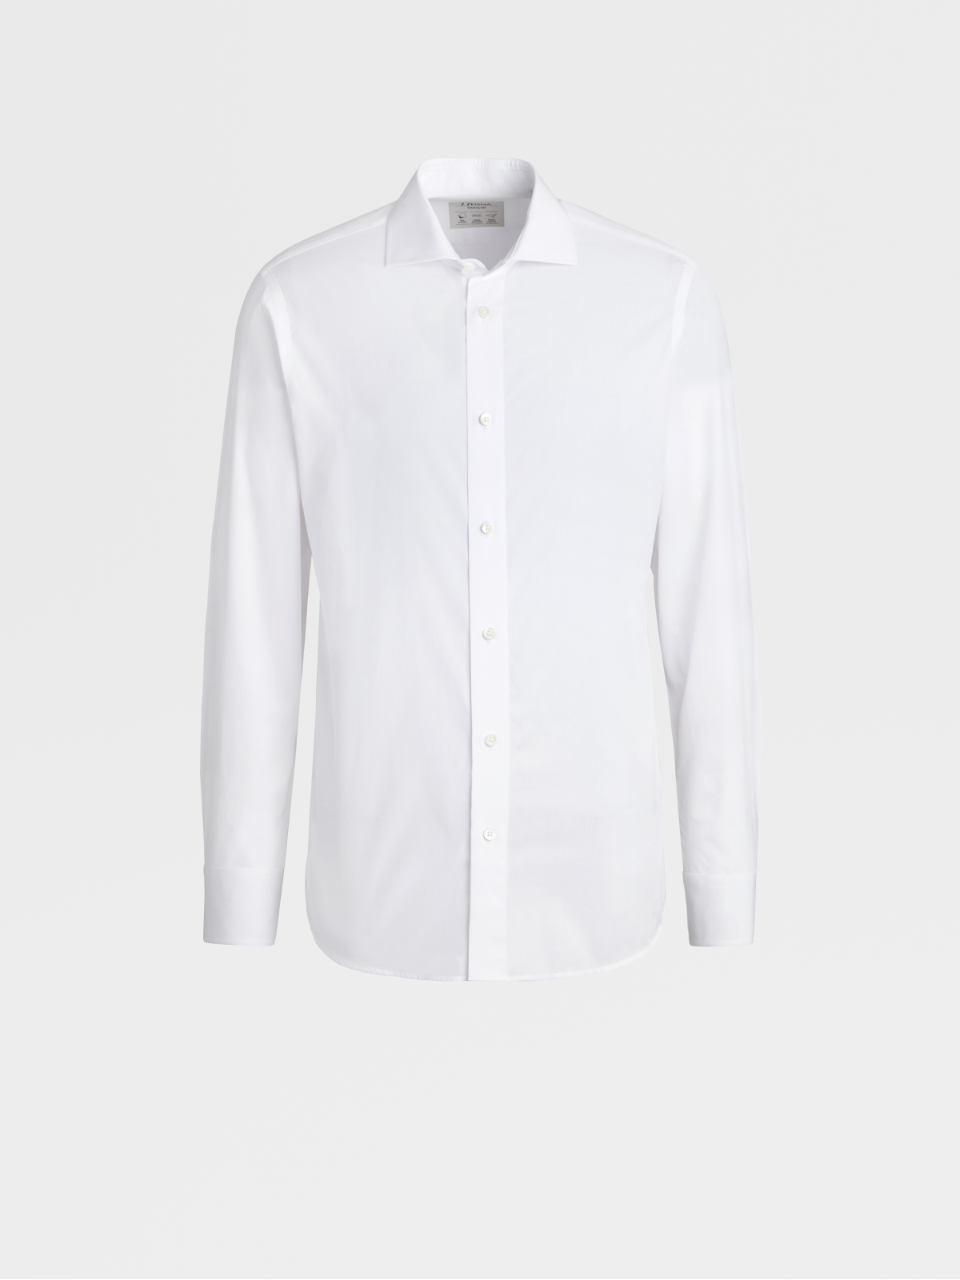 Ermenegildo Zegna Mens White Slim-fit Dress Shirt